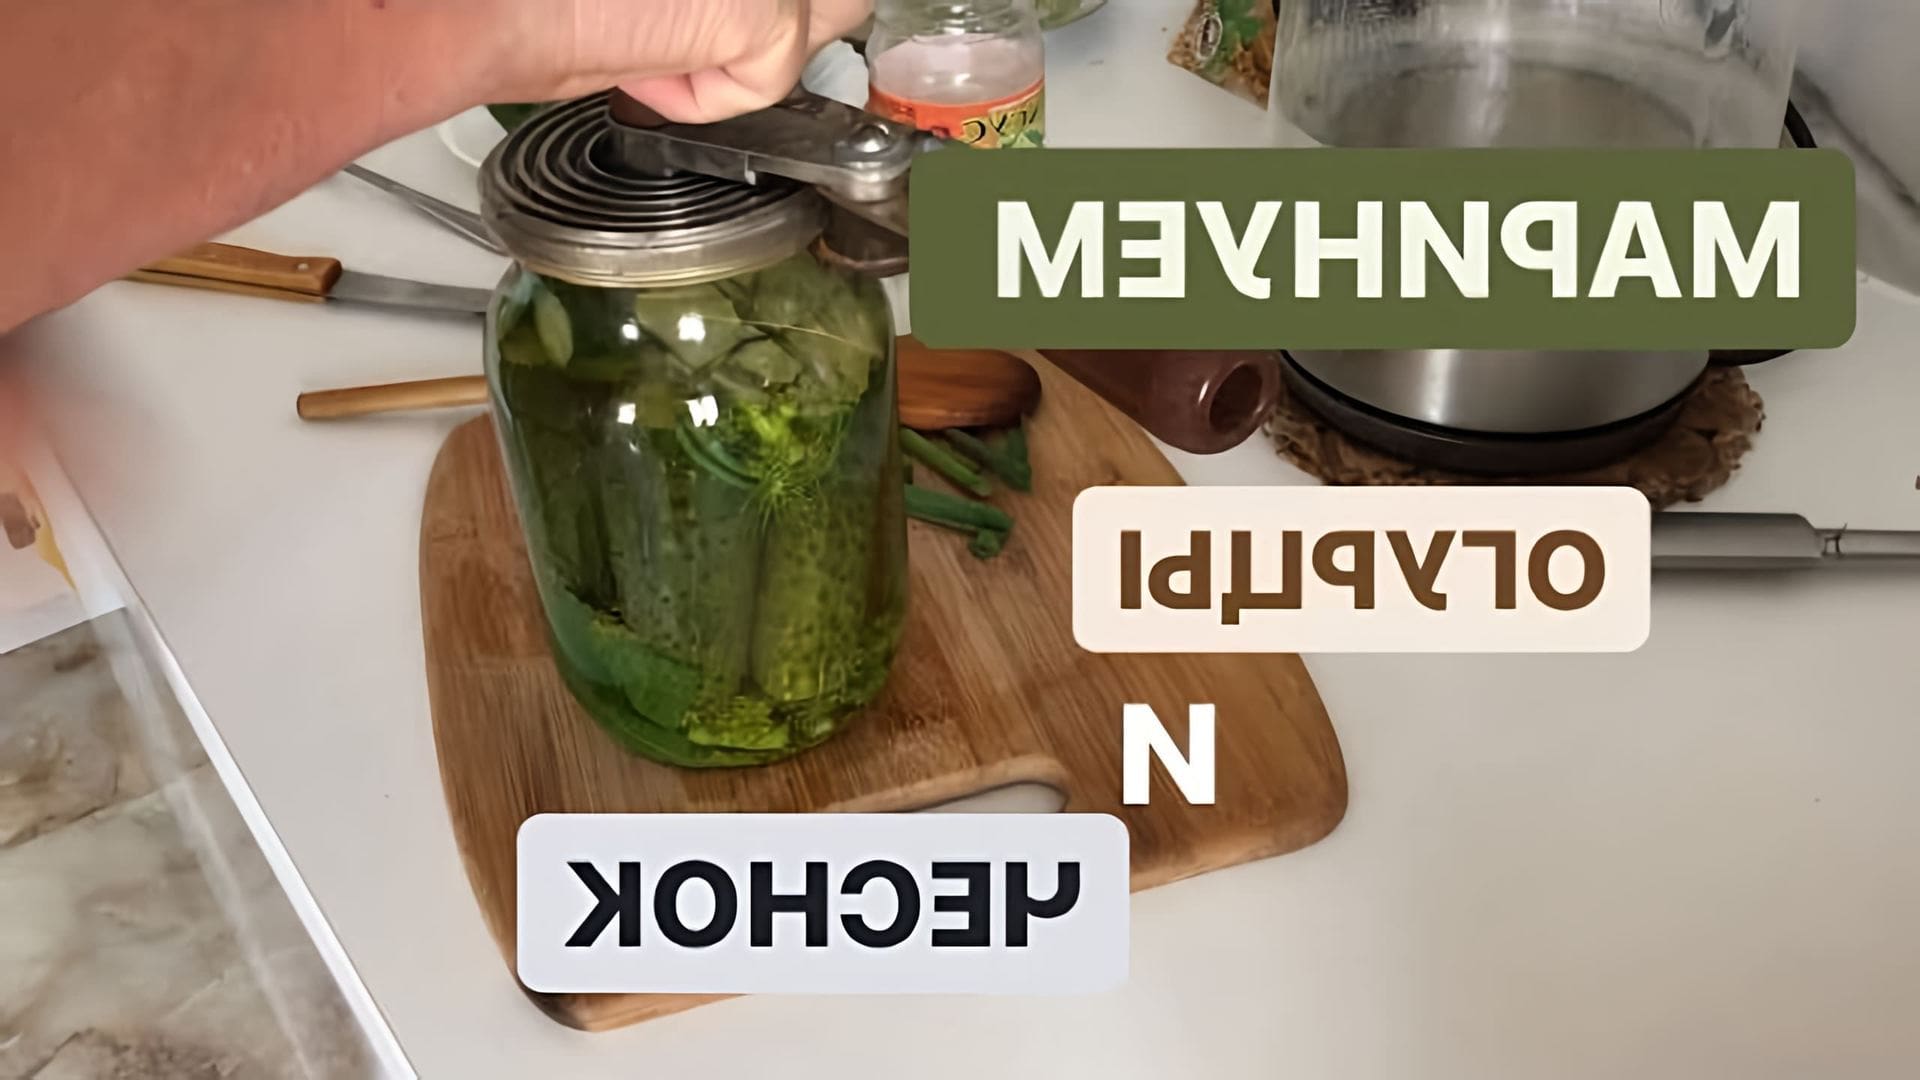 Супер рецепт маринованных огурцов и чеснока - это видео-ролик, который показывает, как приготовить вкусные и ароматные огурцы и чеснок